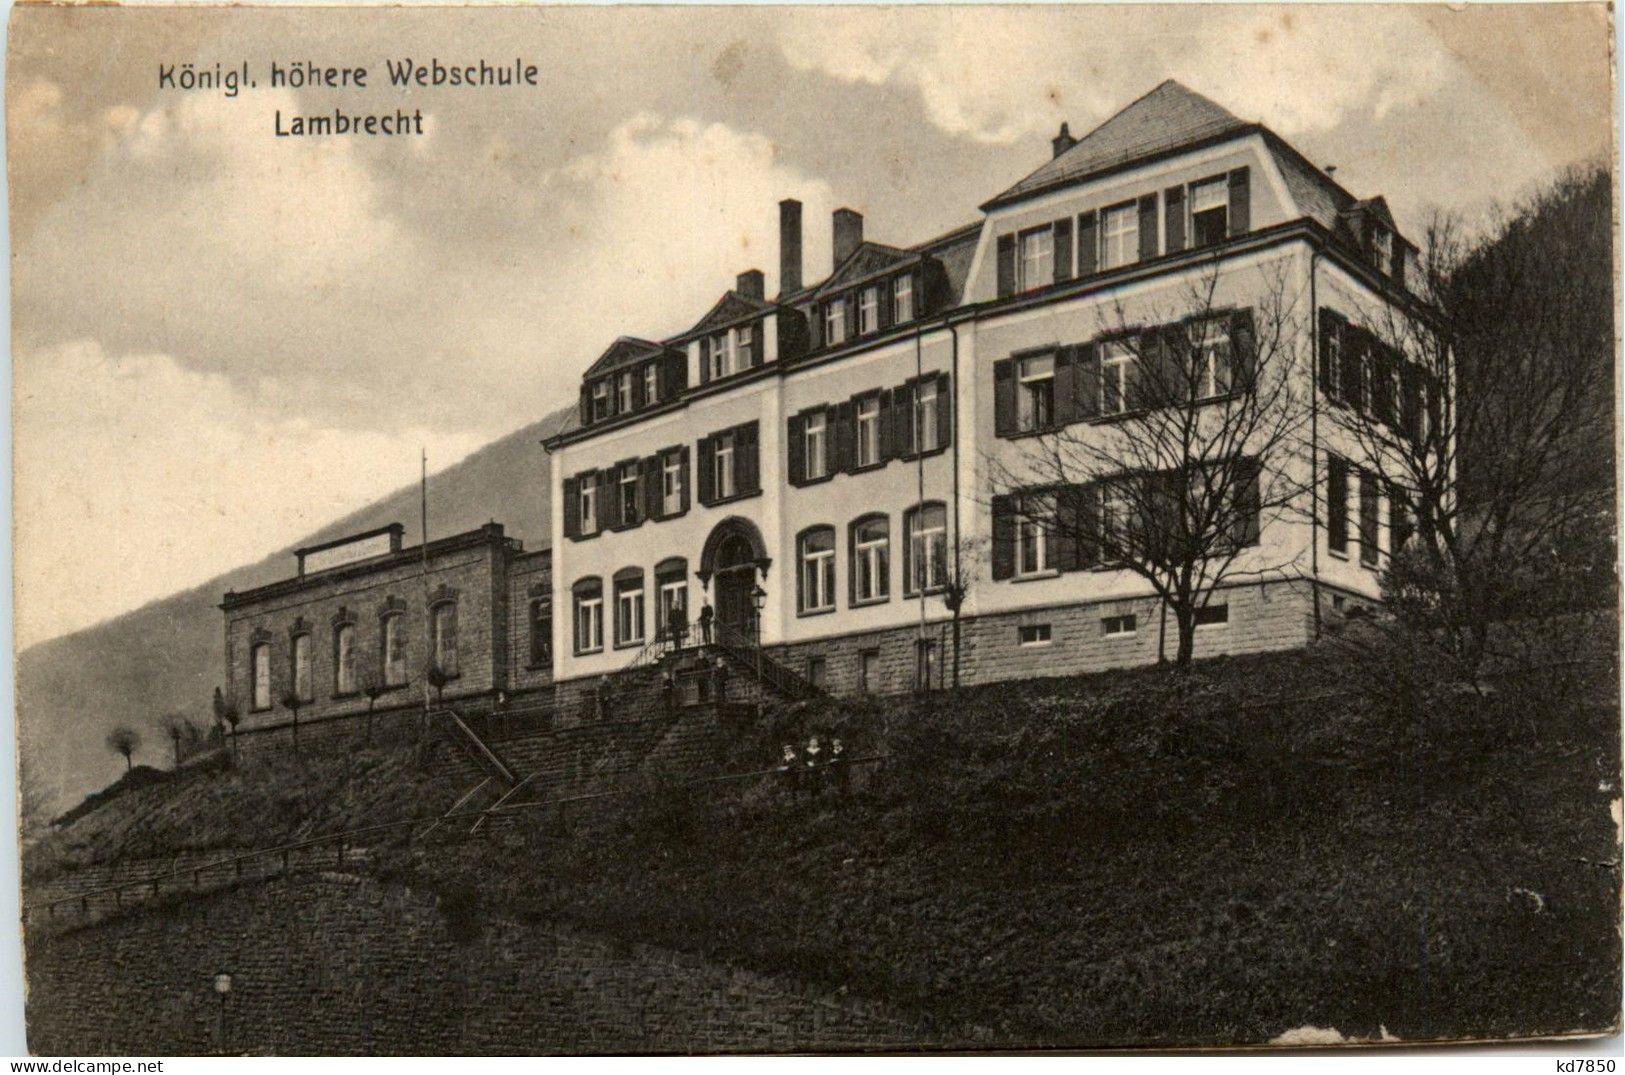 Lambrecht - Königl. Webschule - Bad Duerkheim